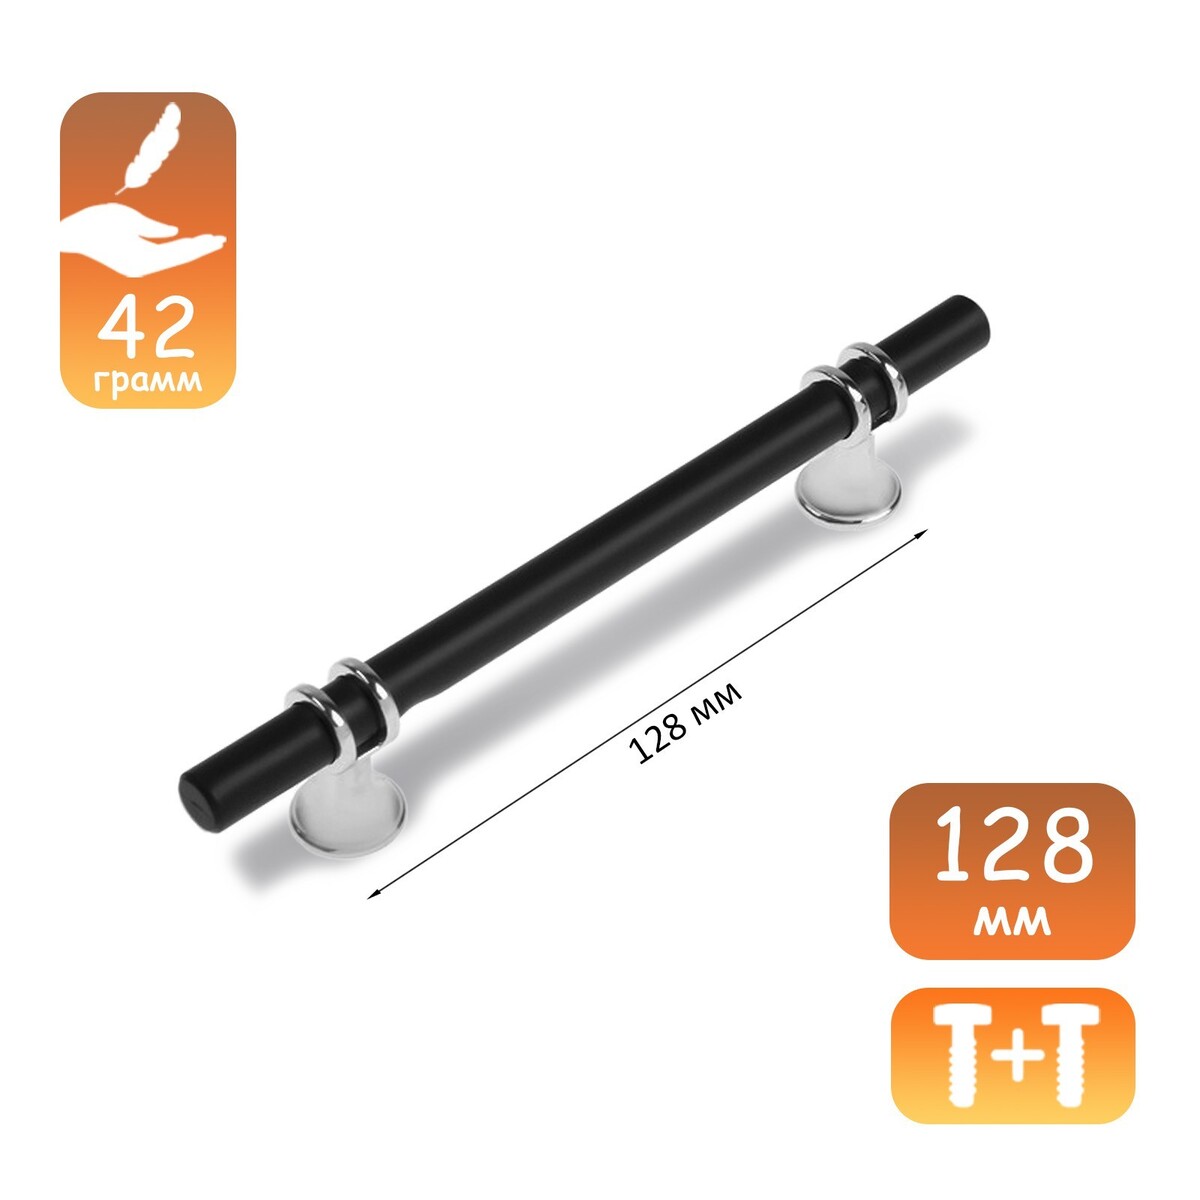 Ручка скоба cappio, м/о 128 мм, d=12 mm, пластик, цвет хром/черный ручка кнопка cappio d 12 мм пластик хром